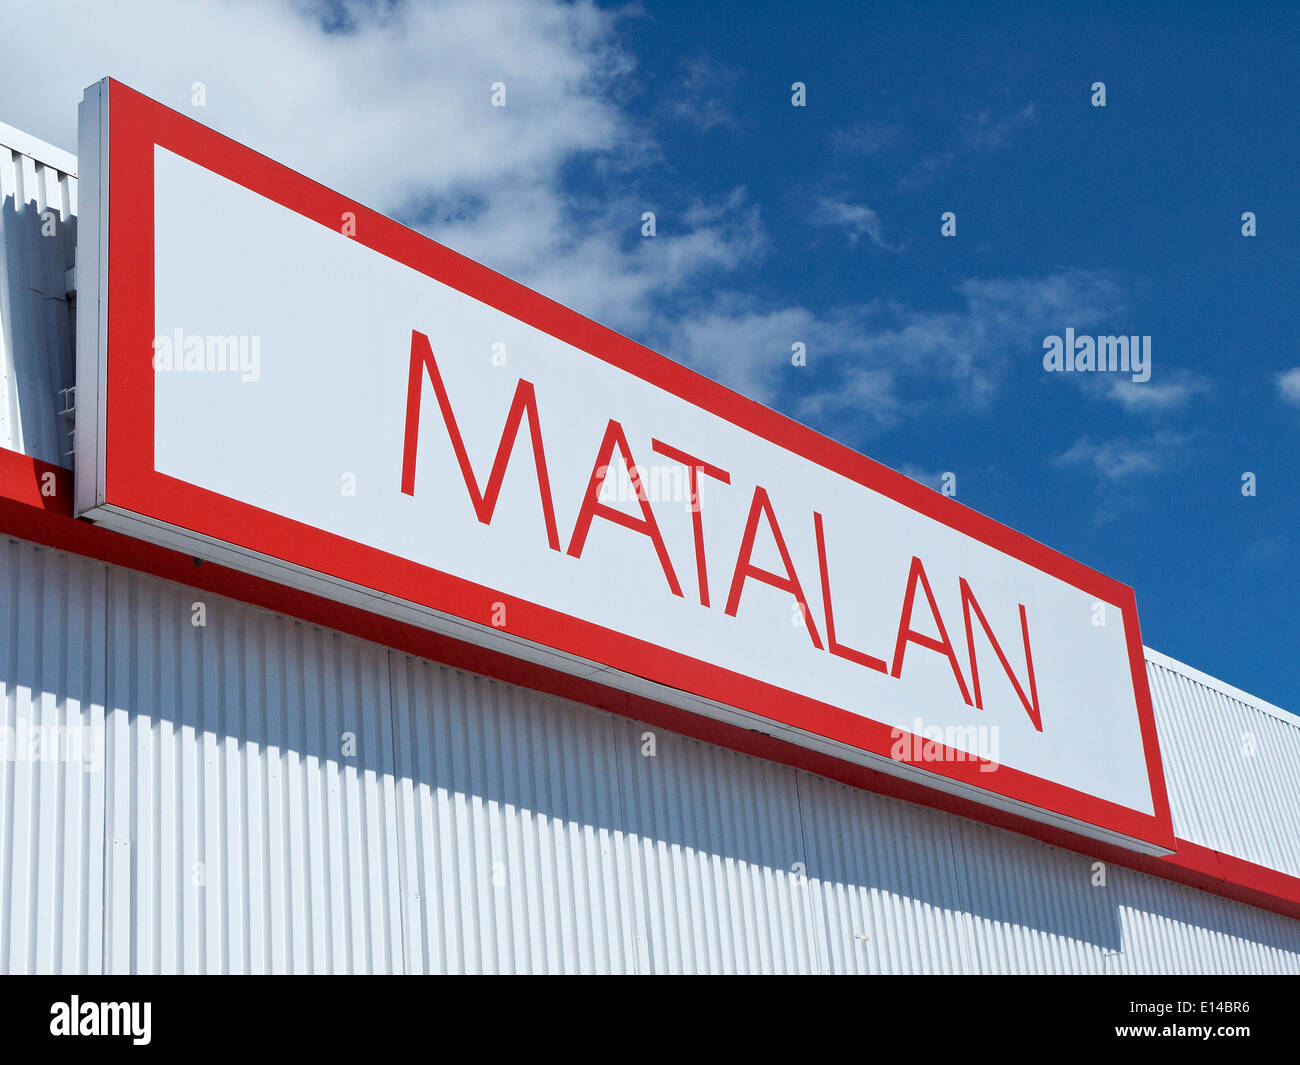 Matalan sign UK Stock Photo